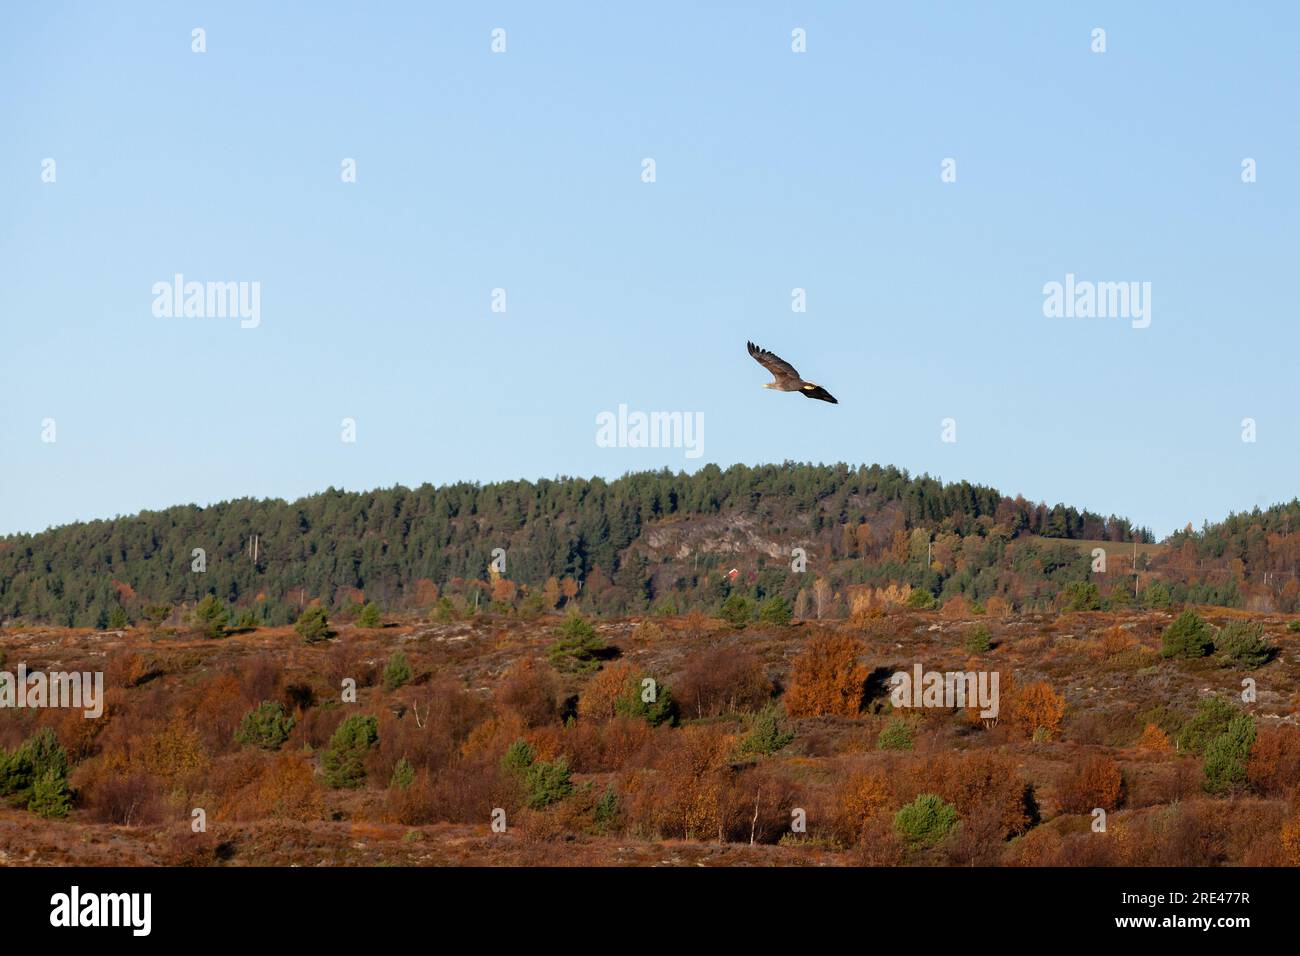 L'aquila dalla coda bianca vola sotto il cielo blu in una giornata di sole. Paesaggio norvegese Foto Stock